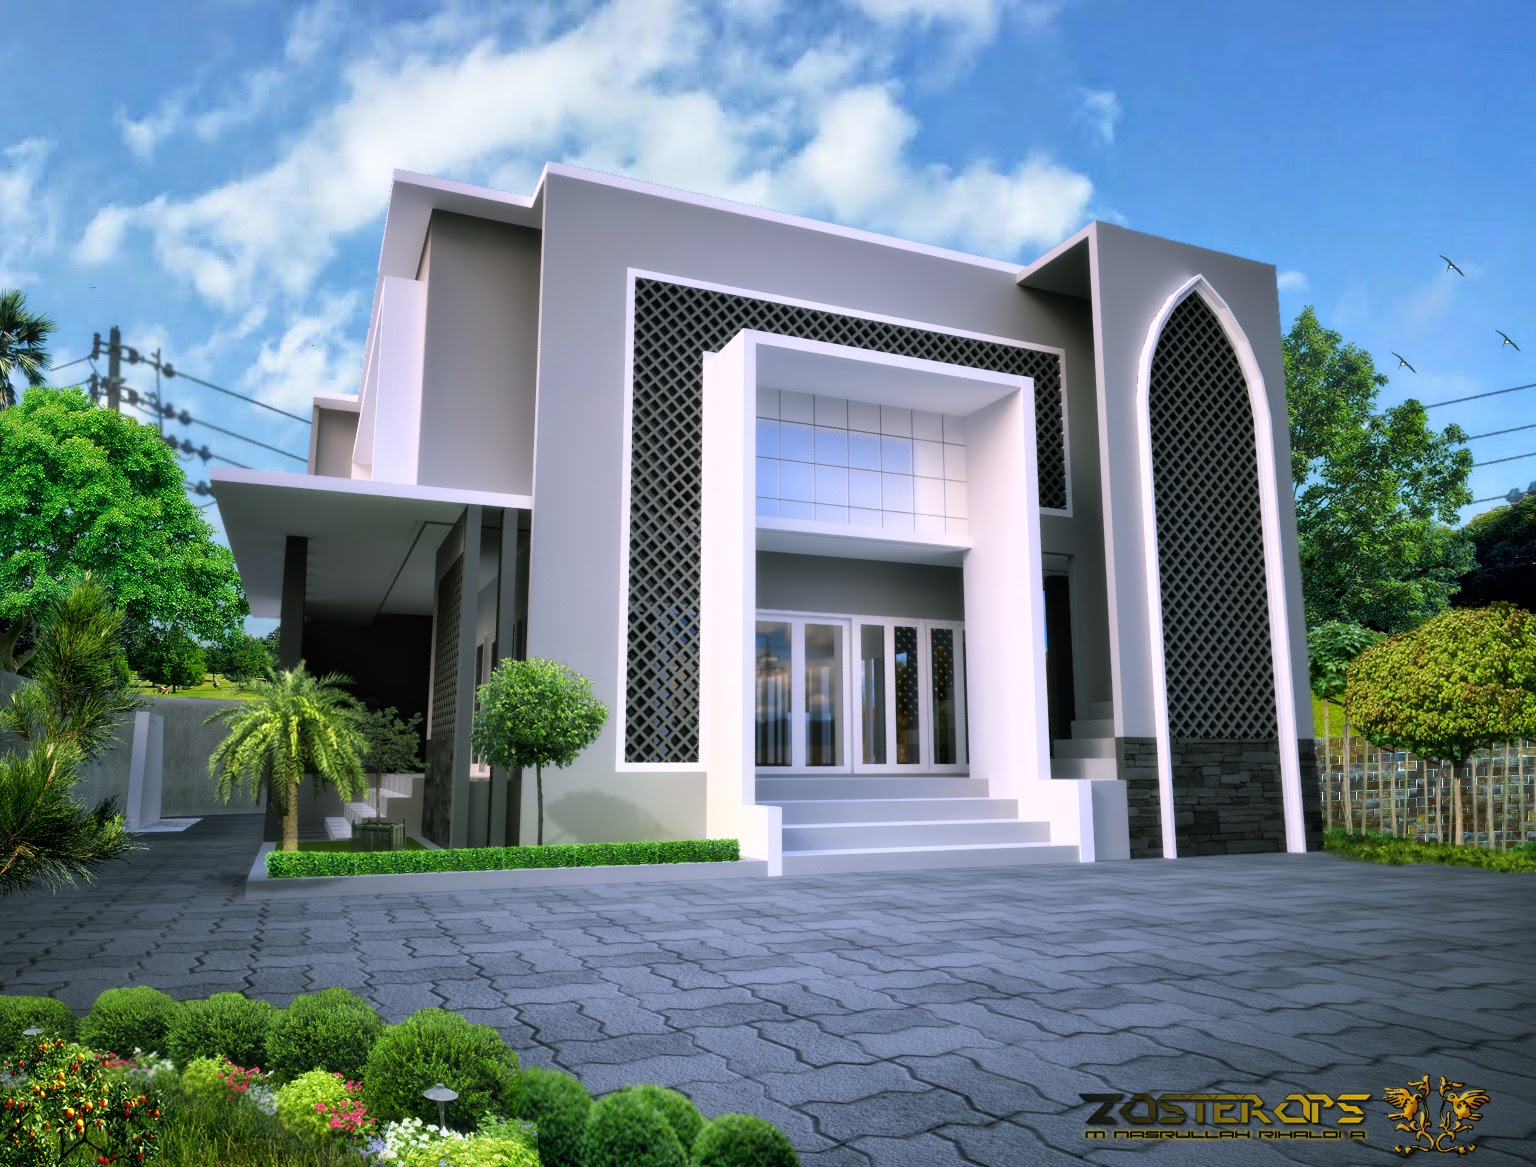 Rencana masjid minimalis (di SMAN 8 Cirebon)  DESAIN 